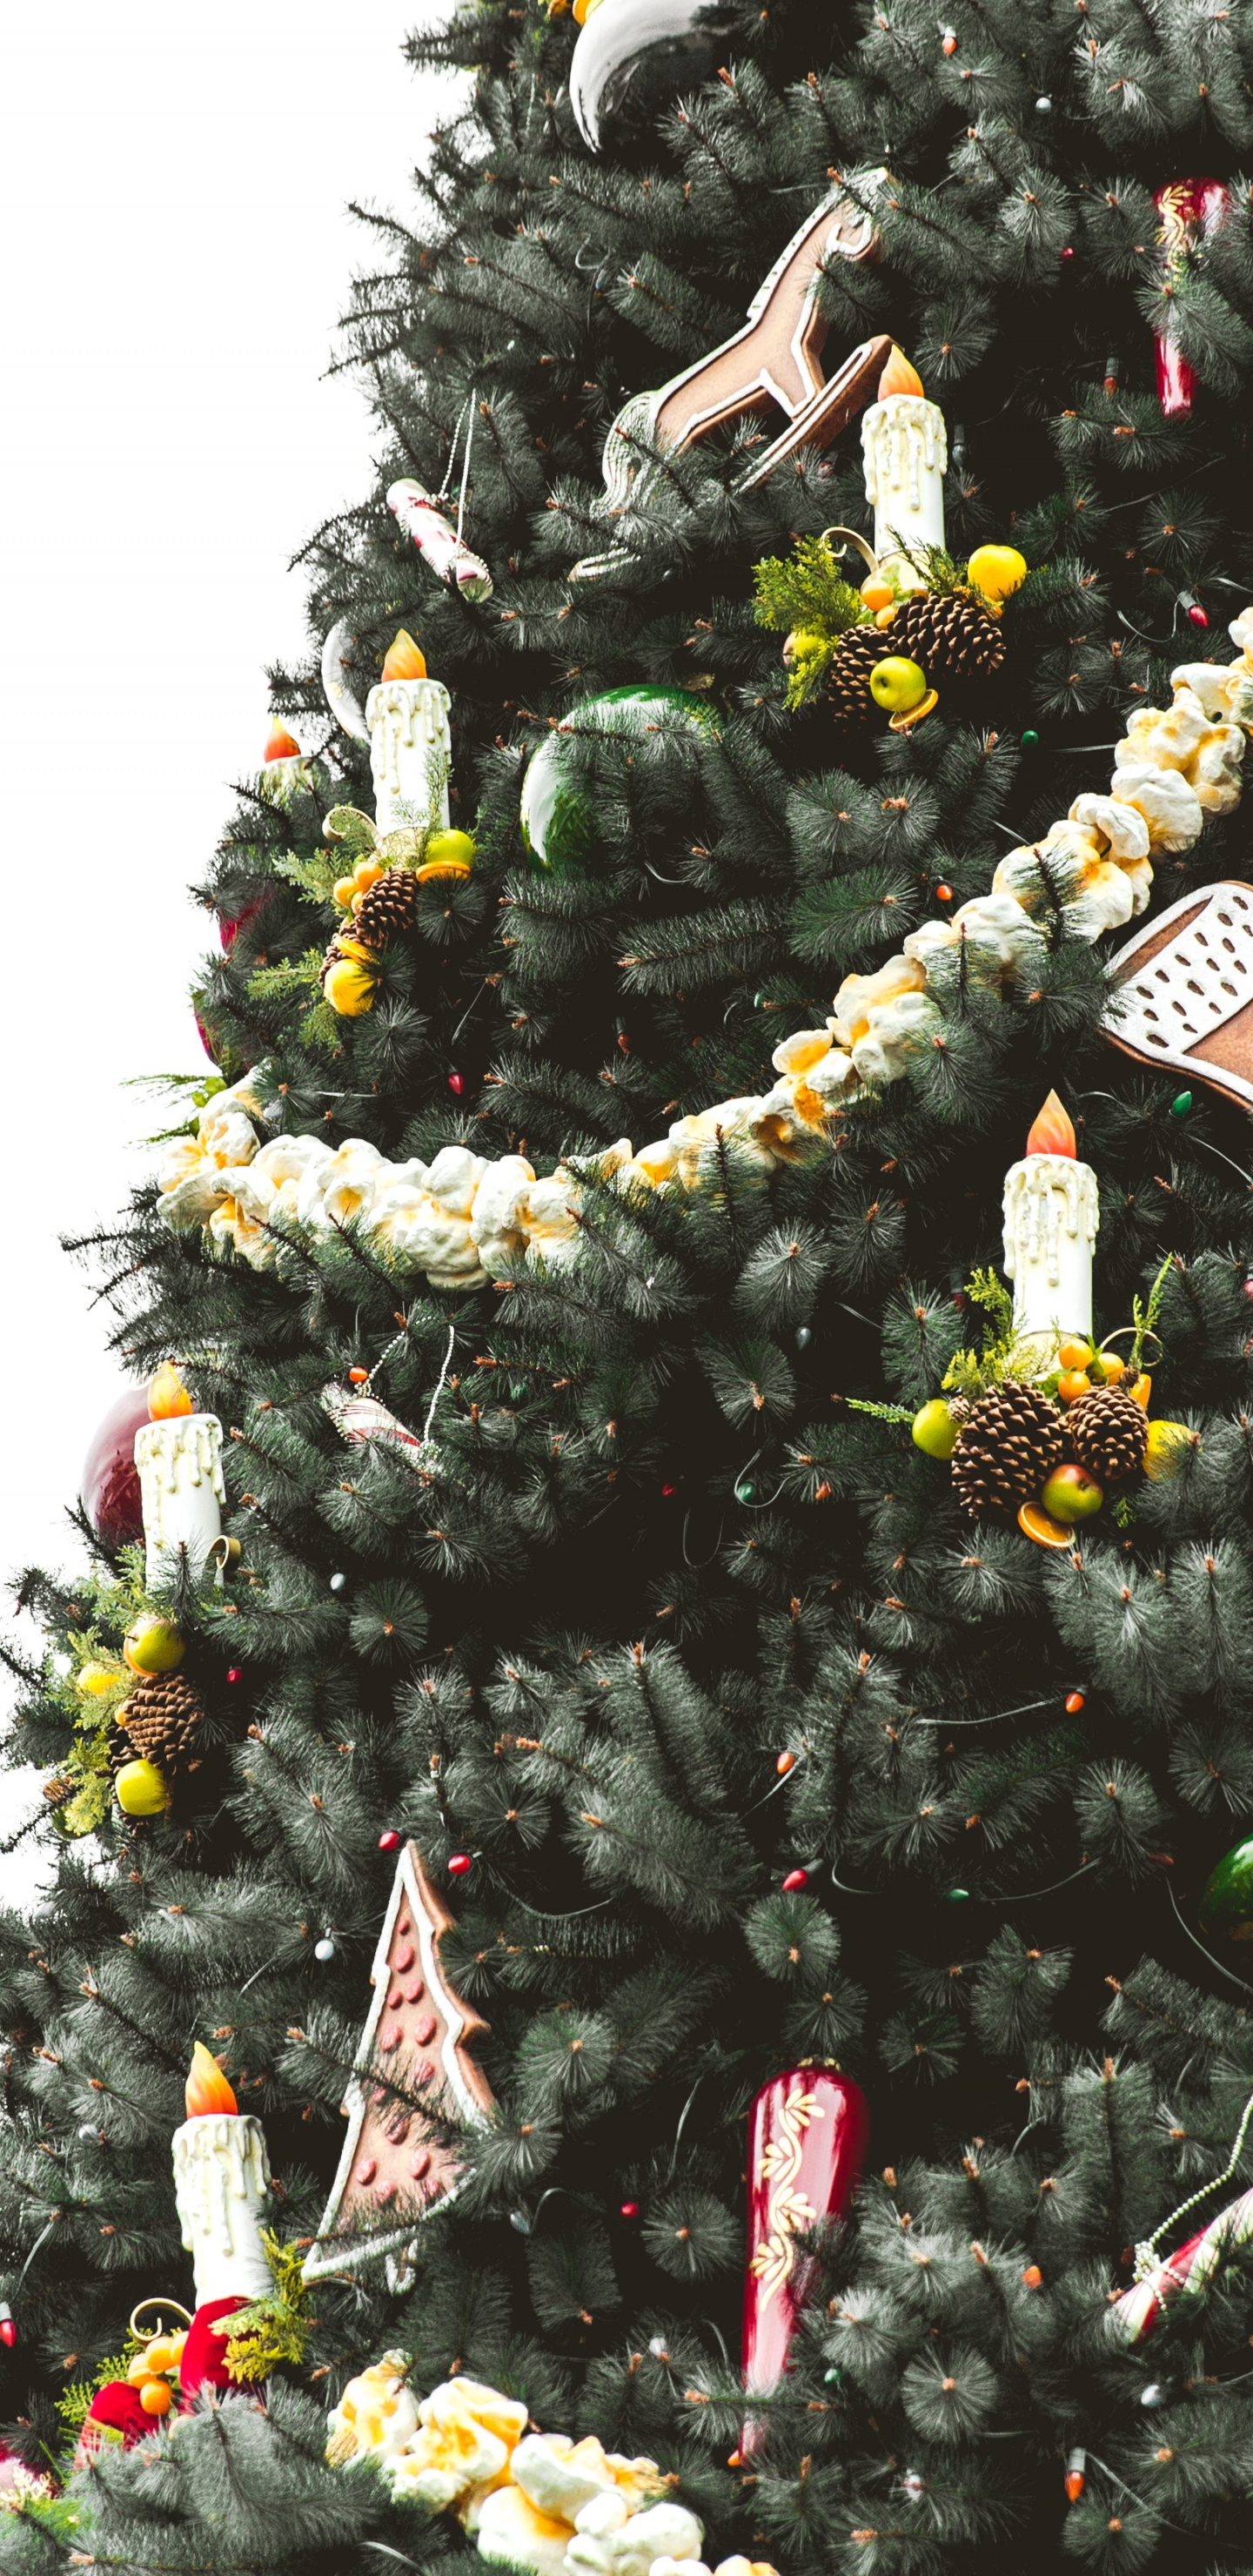 El Día De Navidad, la Navidad y la Temporada de Vacaciones, Planta Leñosa, Evergreen, Decoración de la Navidad. Wallpaper in 1440x2960 Resolution